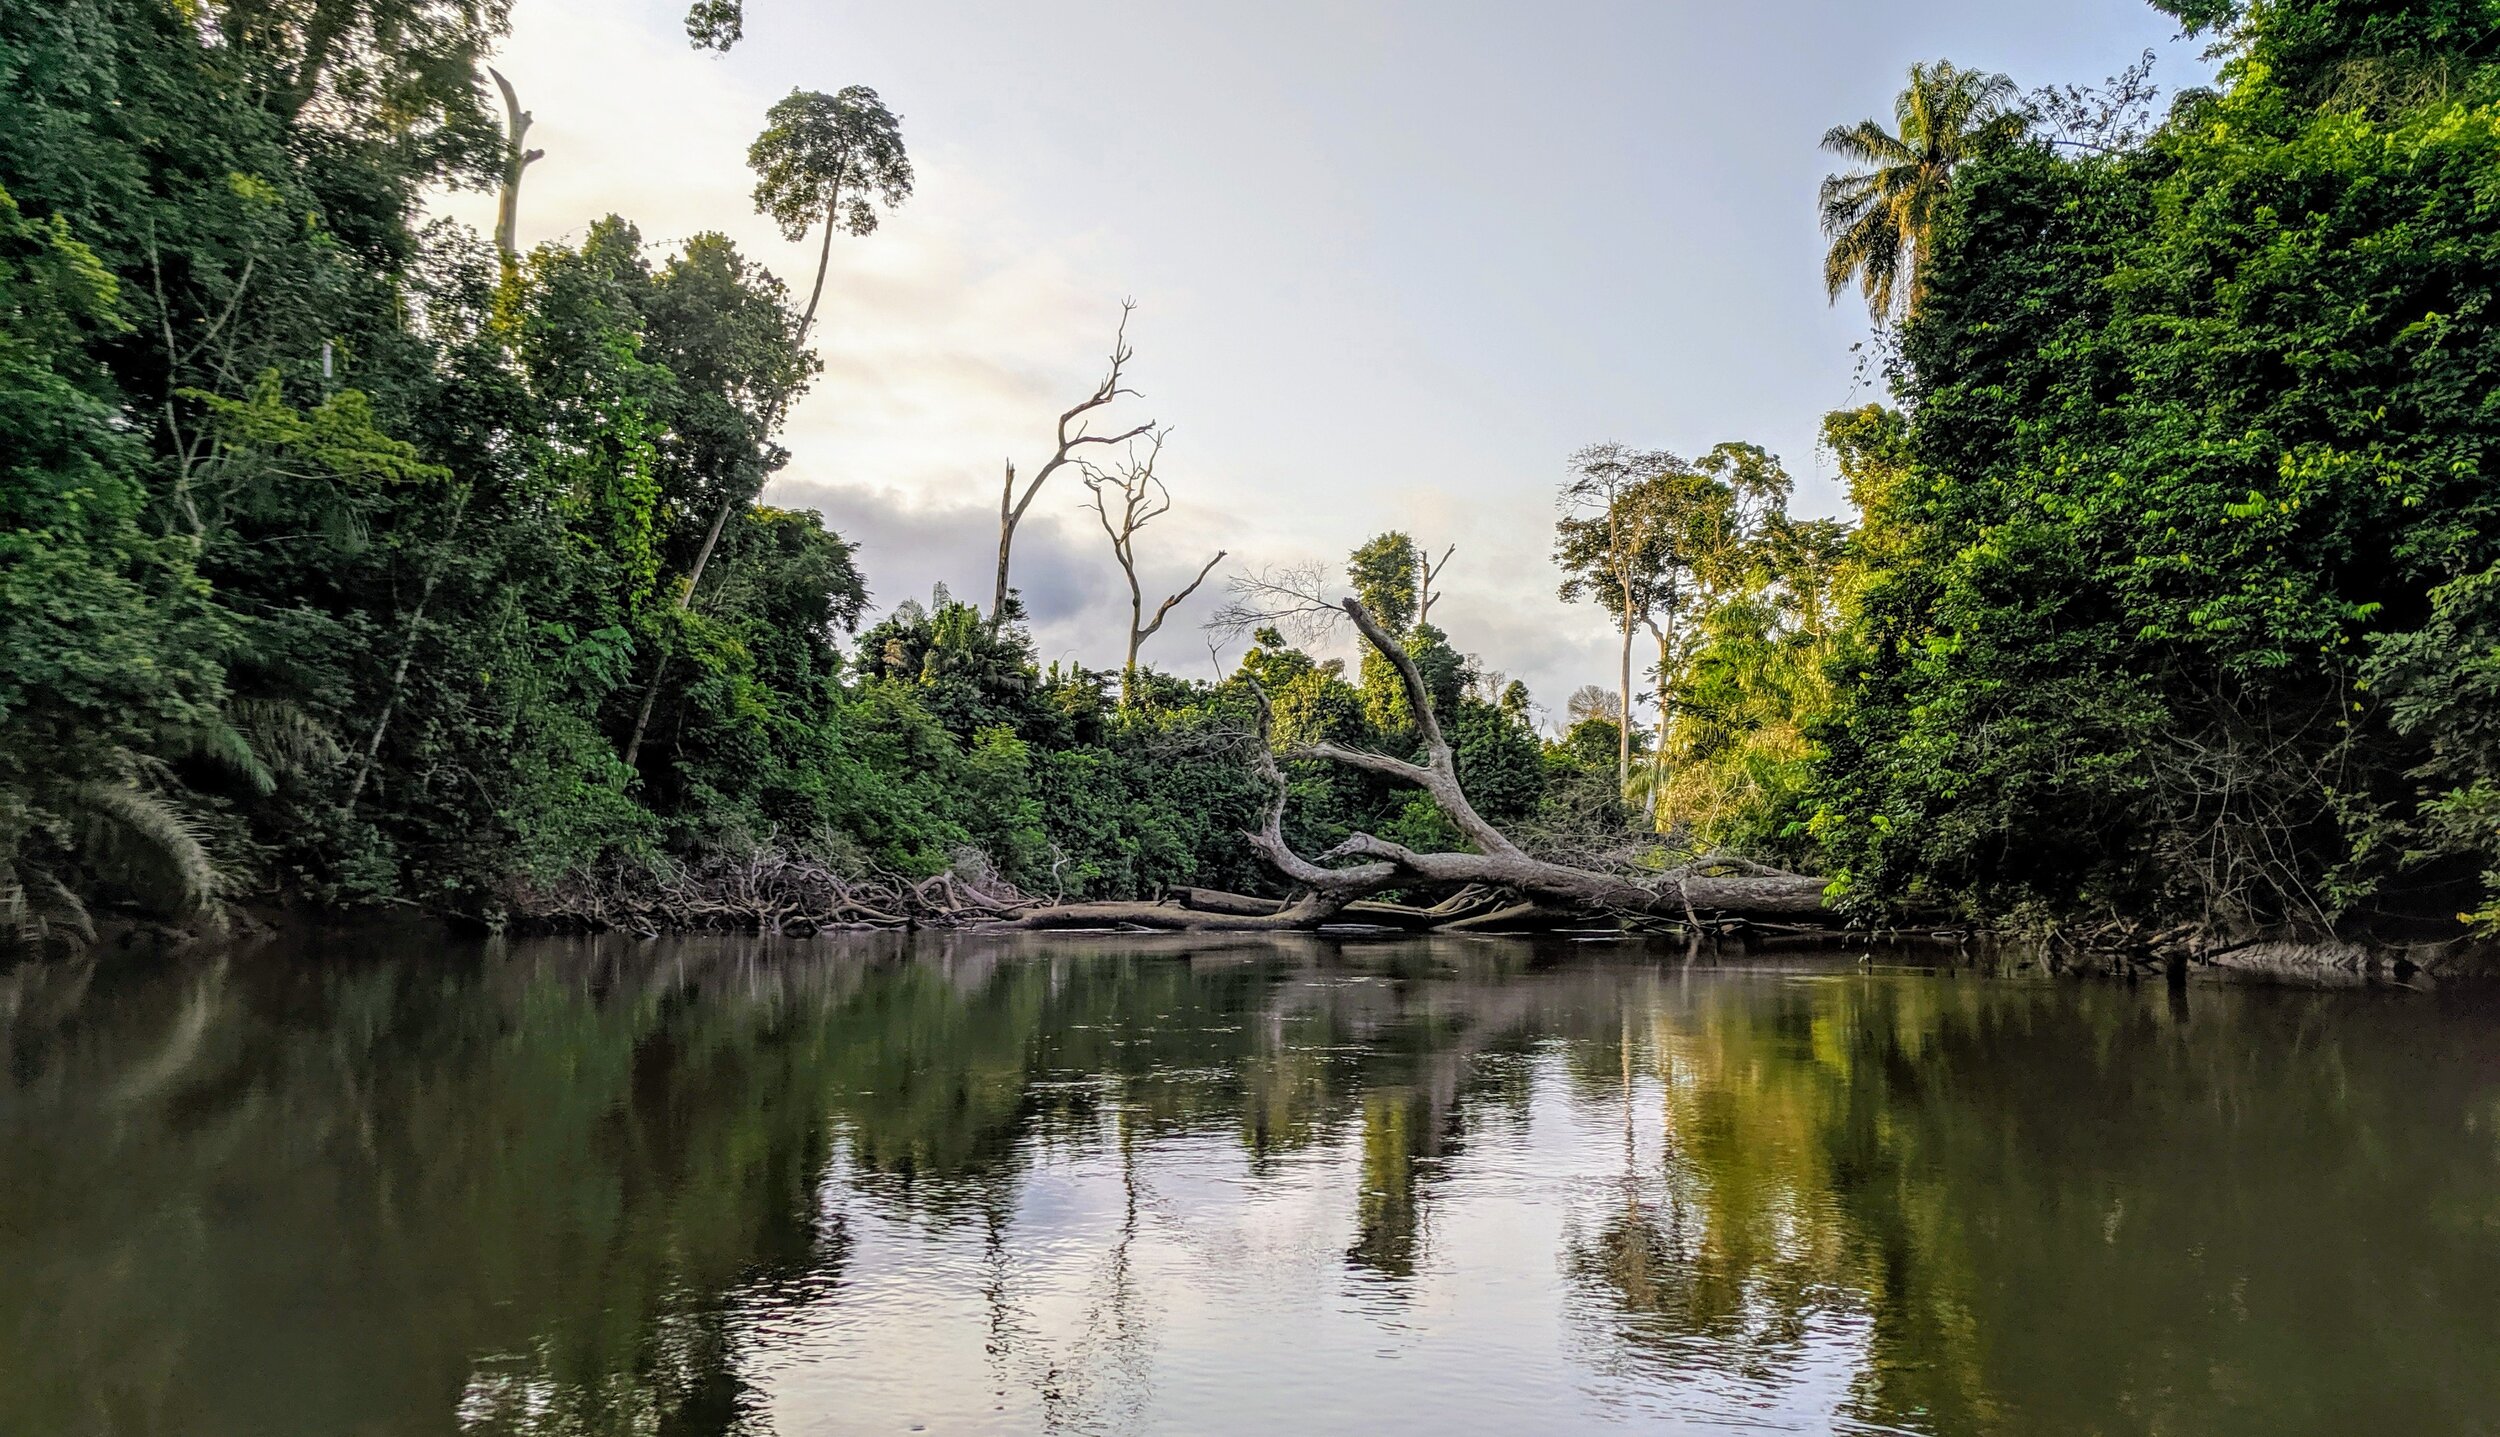 Création en cours de la Réserve Naturelle Volontaire de l’embouchure de la rivière Dodo co-gérée avec les communautés locales pour protéger les mangroves, lagunes et forêts côtières